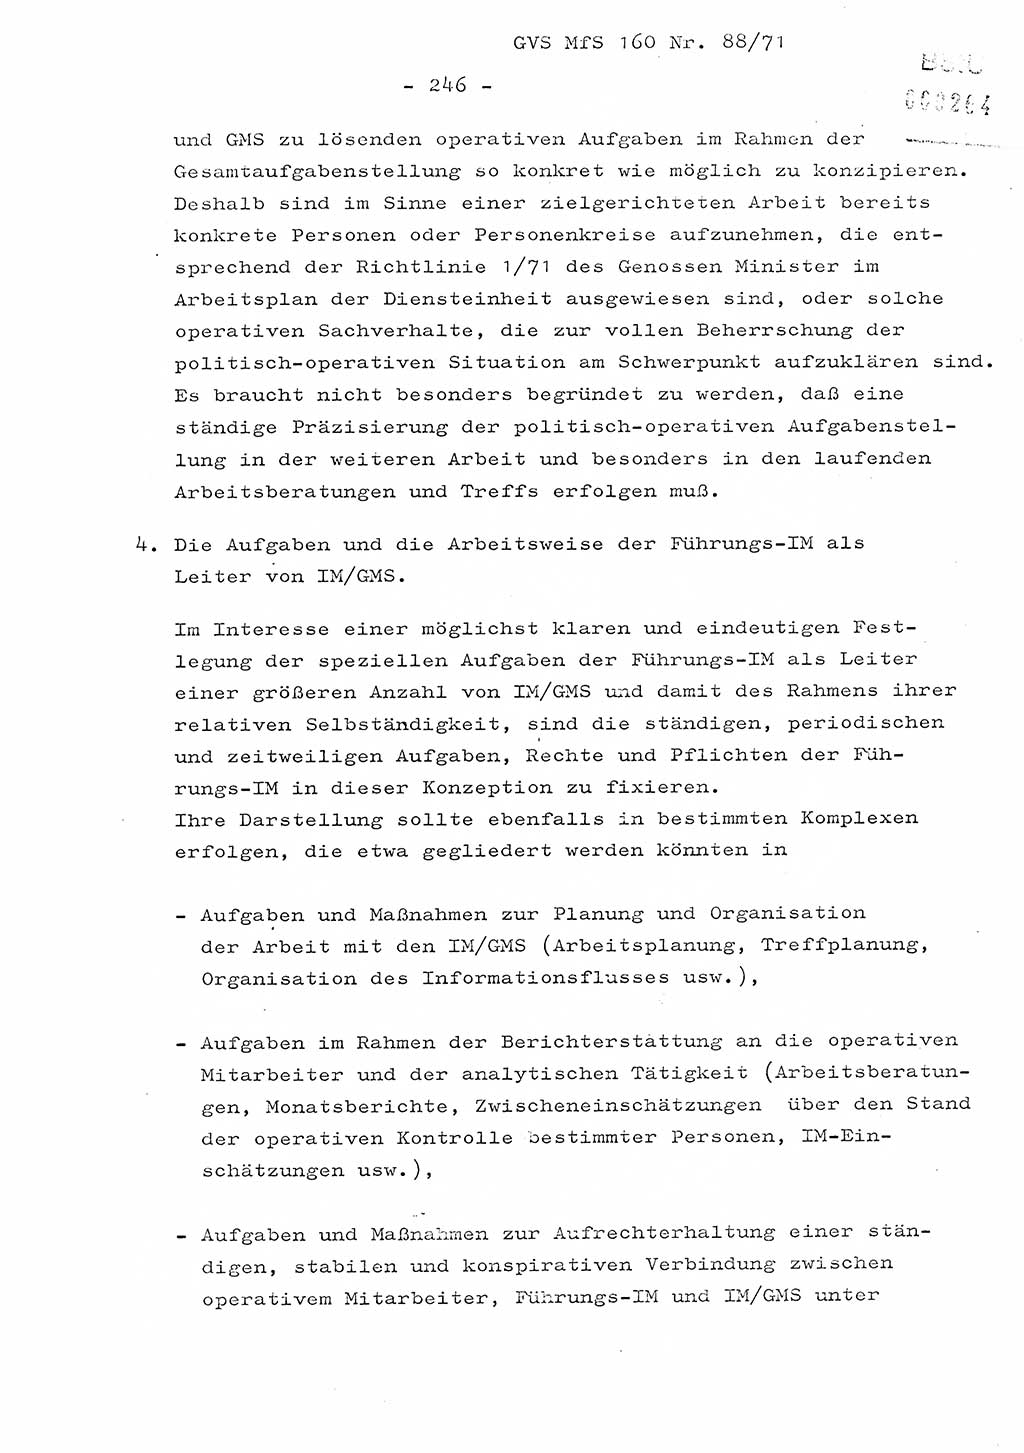 Dissertation Oberstleutnant Josef Schwarz (BV Schwerin), Major Fritz Amm (JHS), Hauptmann Peter Gräßler (JHS), Ministerium für Staatssicherheit (MfS) [Deutsche Demokratische Republik (DDR)], Juristische Hochschule (JHS), Geheime Verschlußsache (GVS) 160-88/71, Potsdam 1972, Seite 246 (Diss. MfS DDR JHS GVS 160-88/71 1972, S. 246)